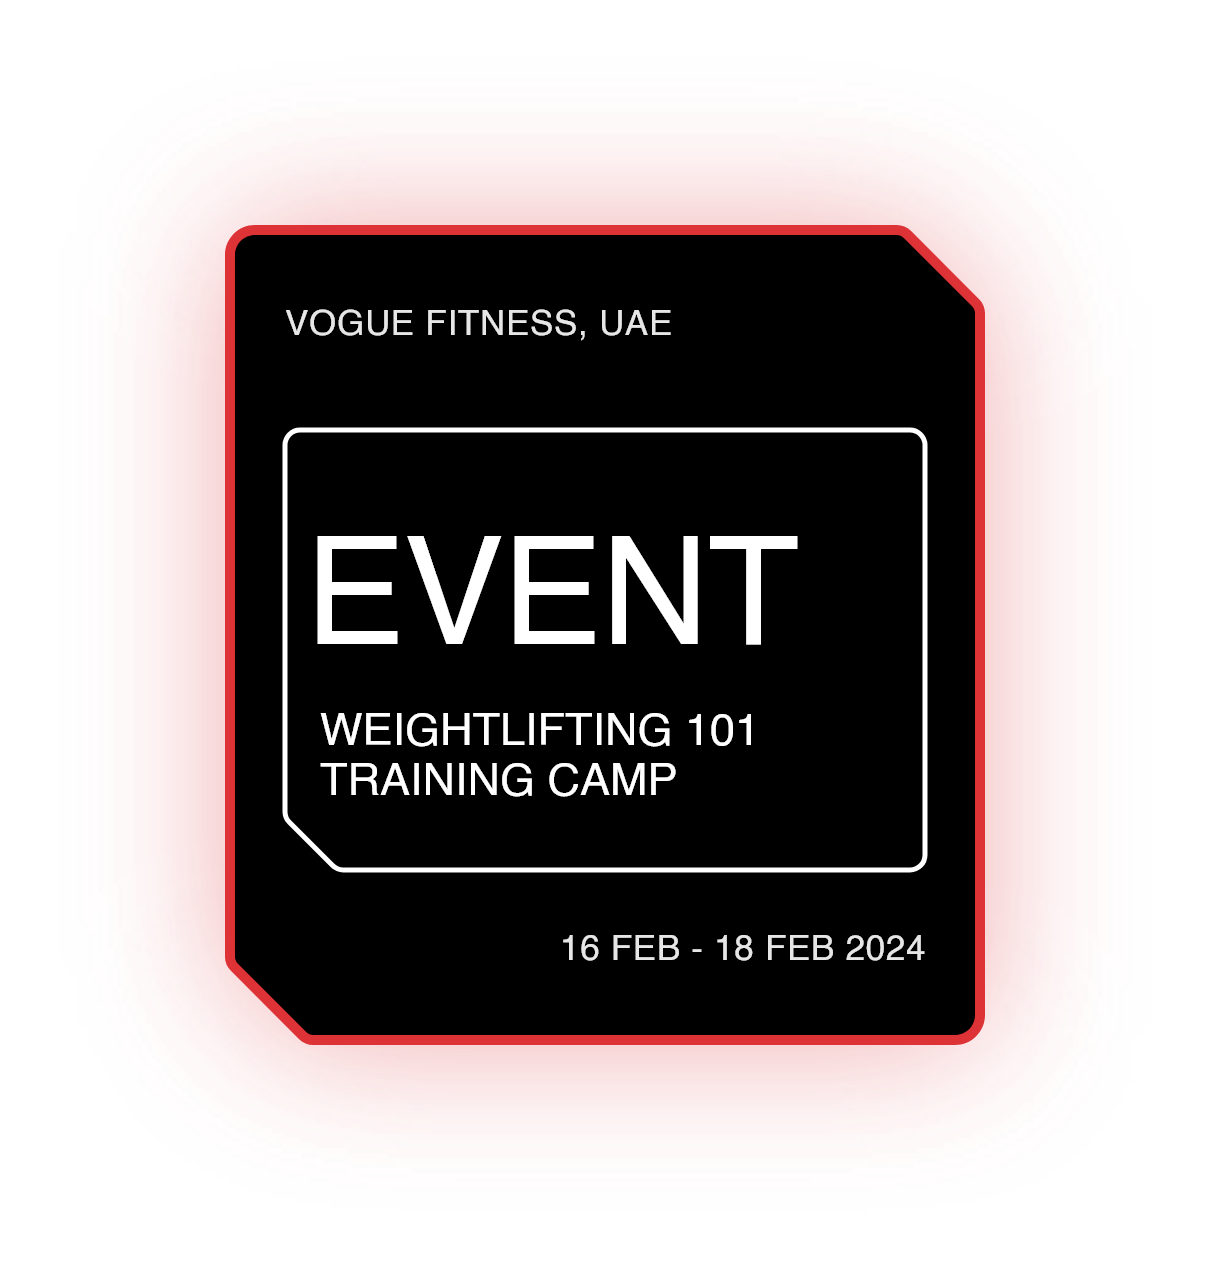 Weightlifting 101 Training Camp - Abu Dhabi, UAE